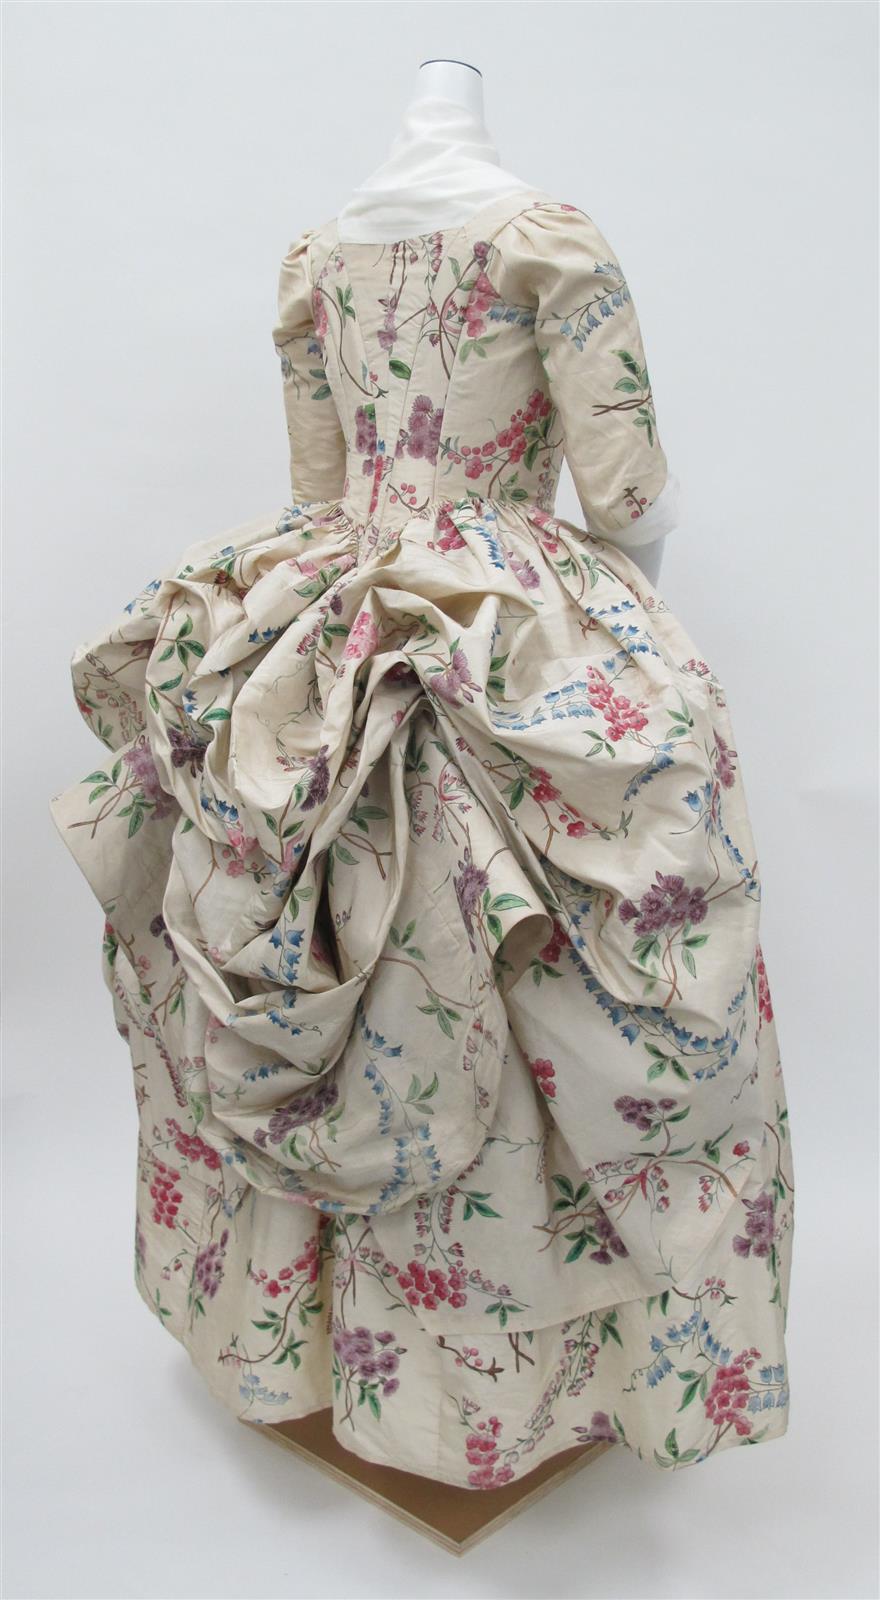 1780 Robe à la Polonaise. French. Silk. metmuseum